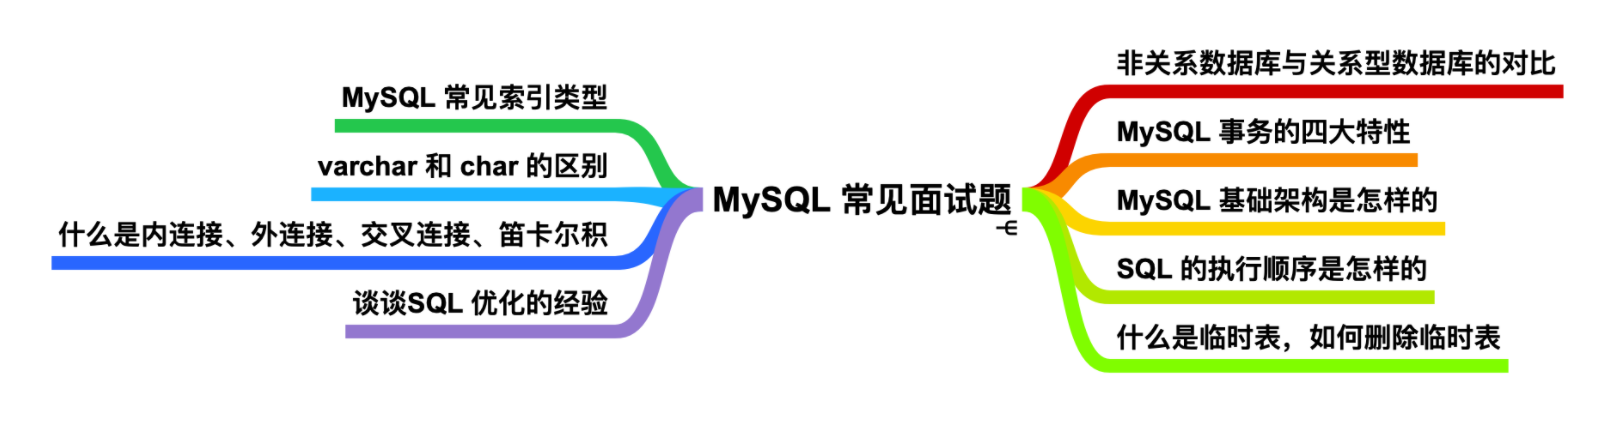 很用心的为你写了 9 道 MySQL 面试题[通俗易懂]